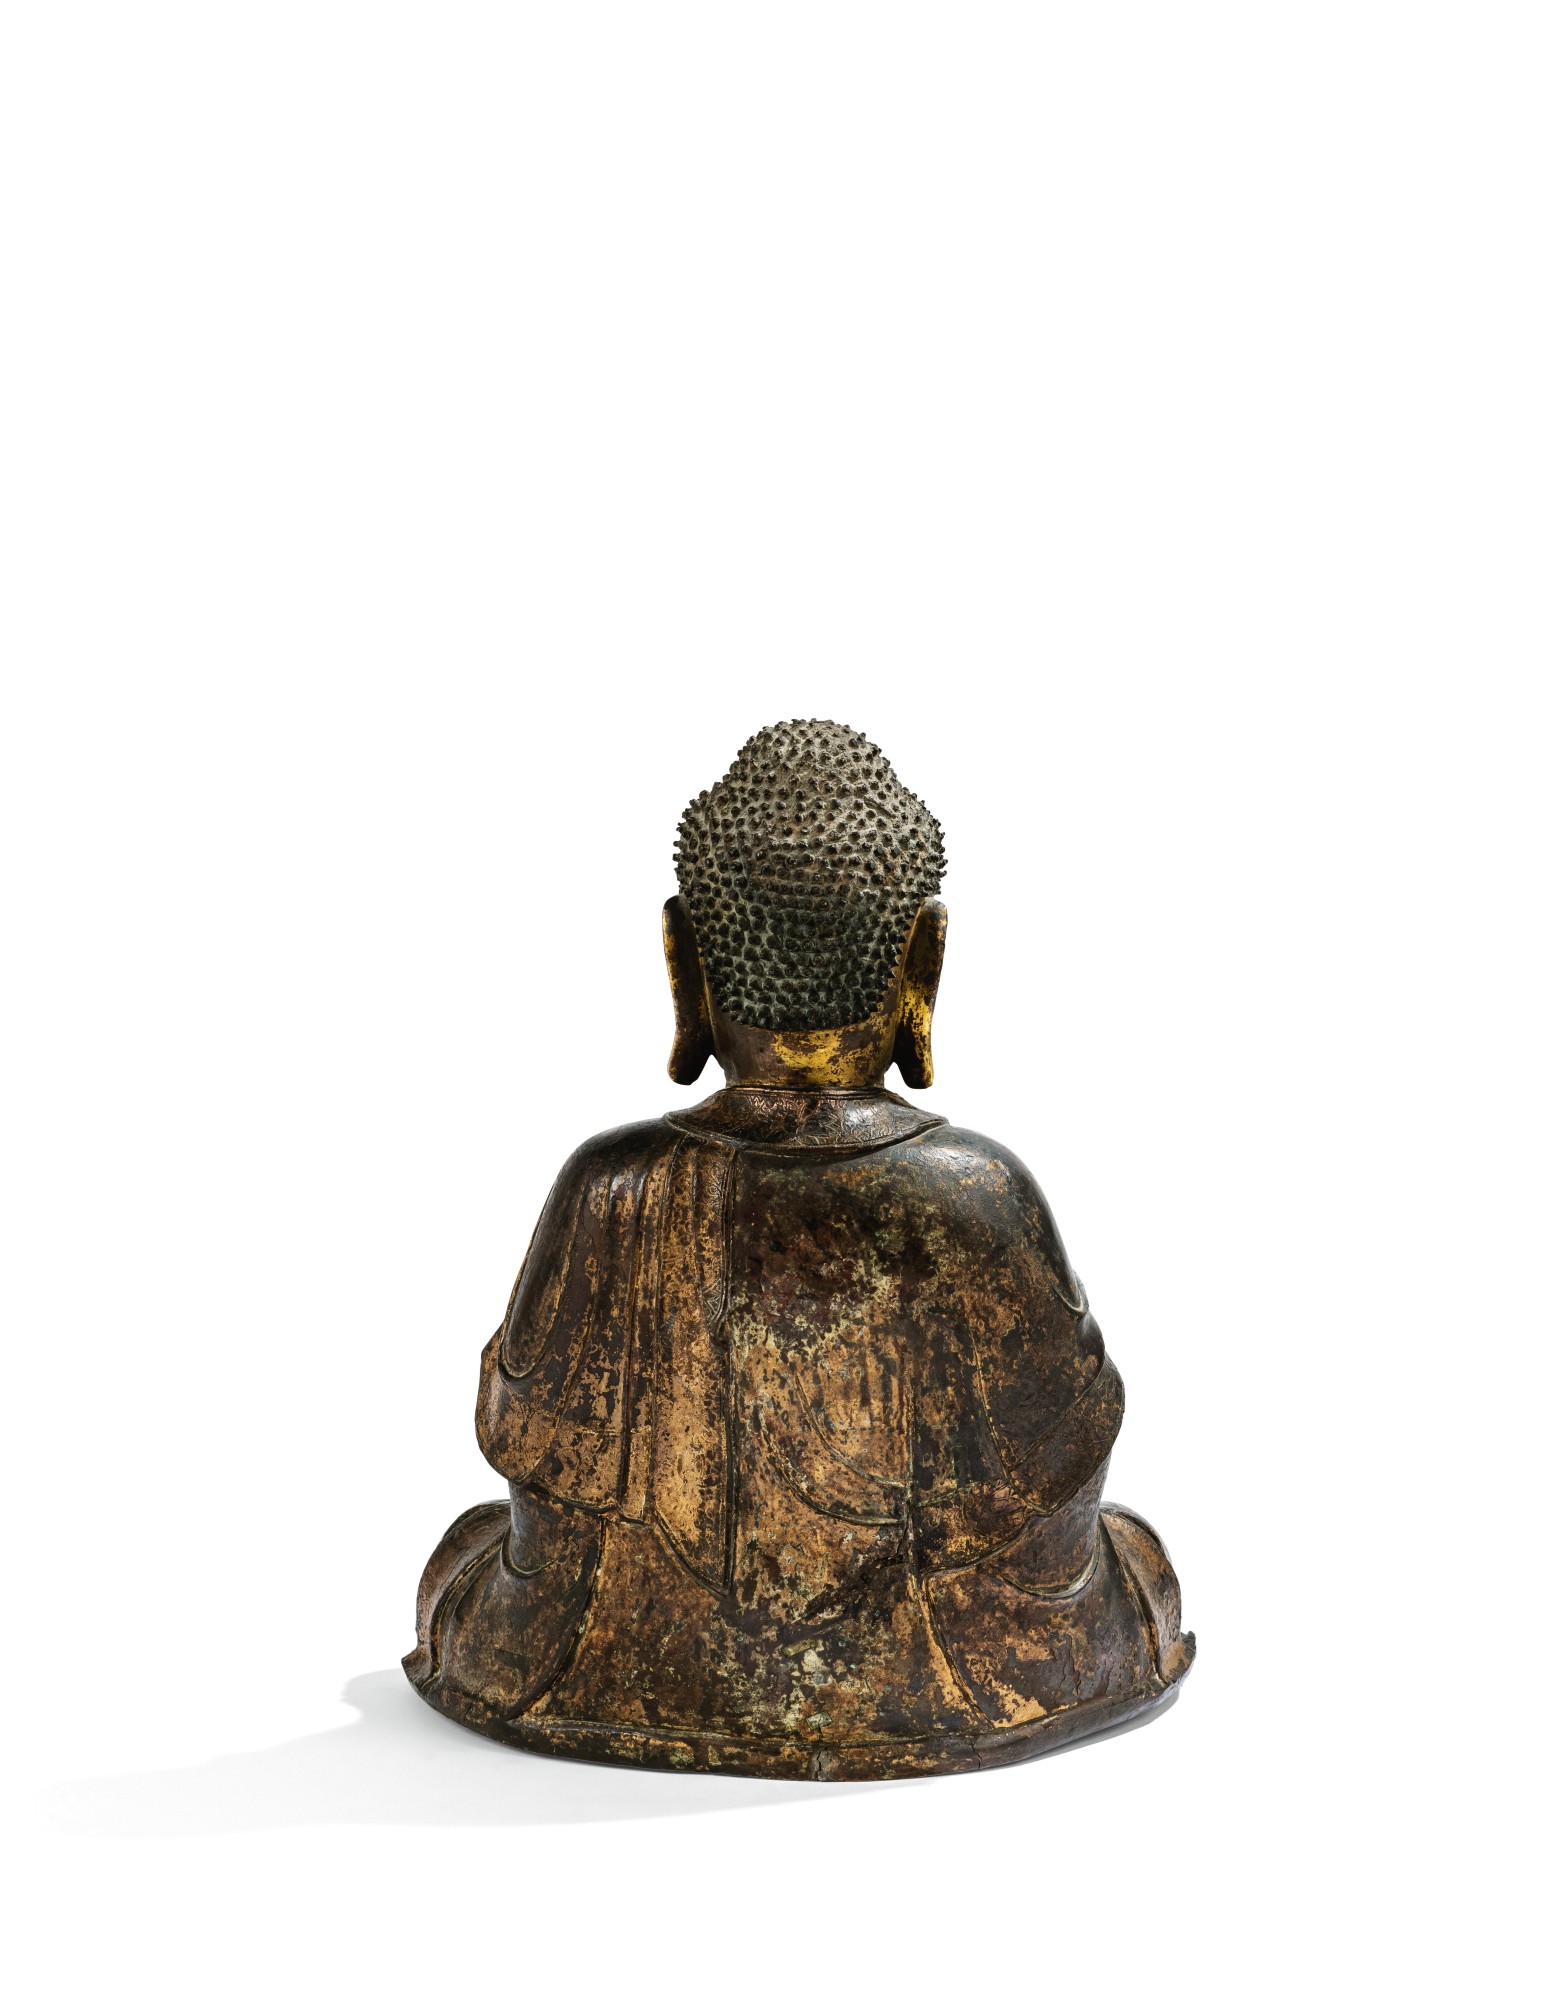 明十六 / 十七世紀 銅局部鎏金阿彌陀佛坐像